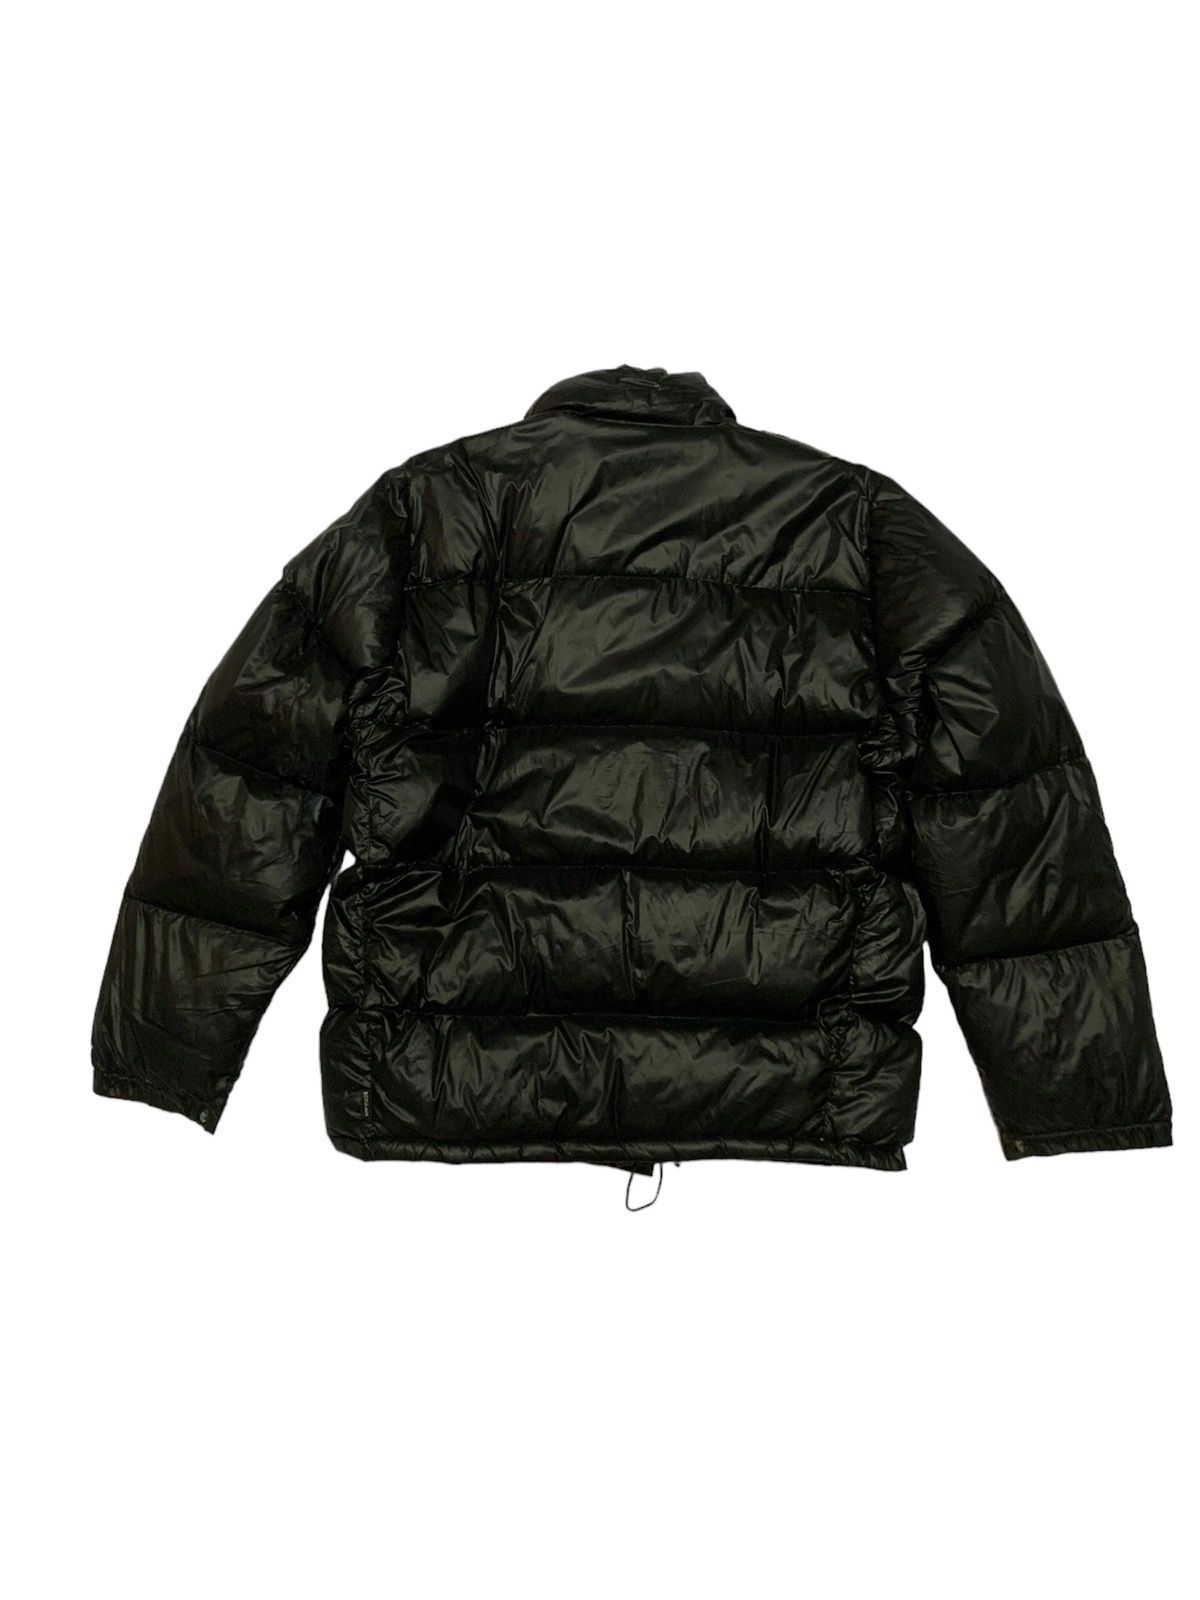 Vintage Moncler Grenoble Puffer Black Jacket - 3